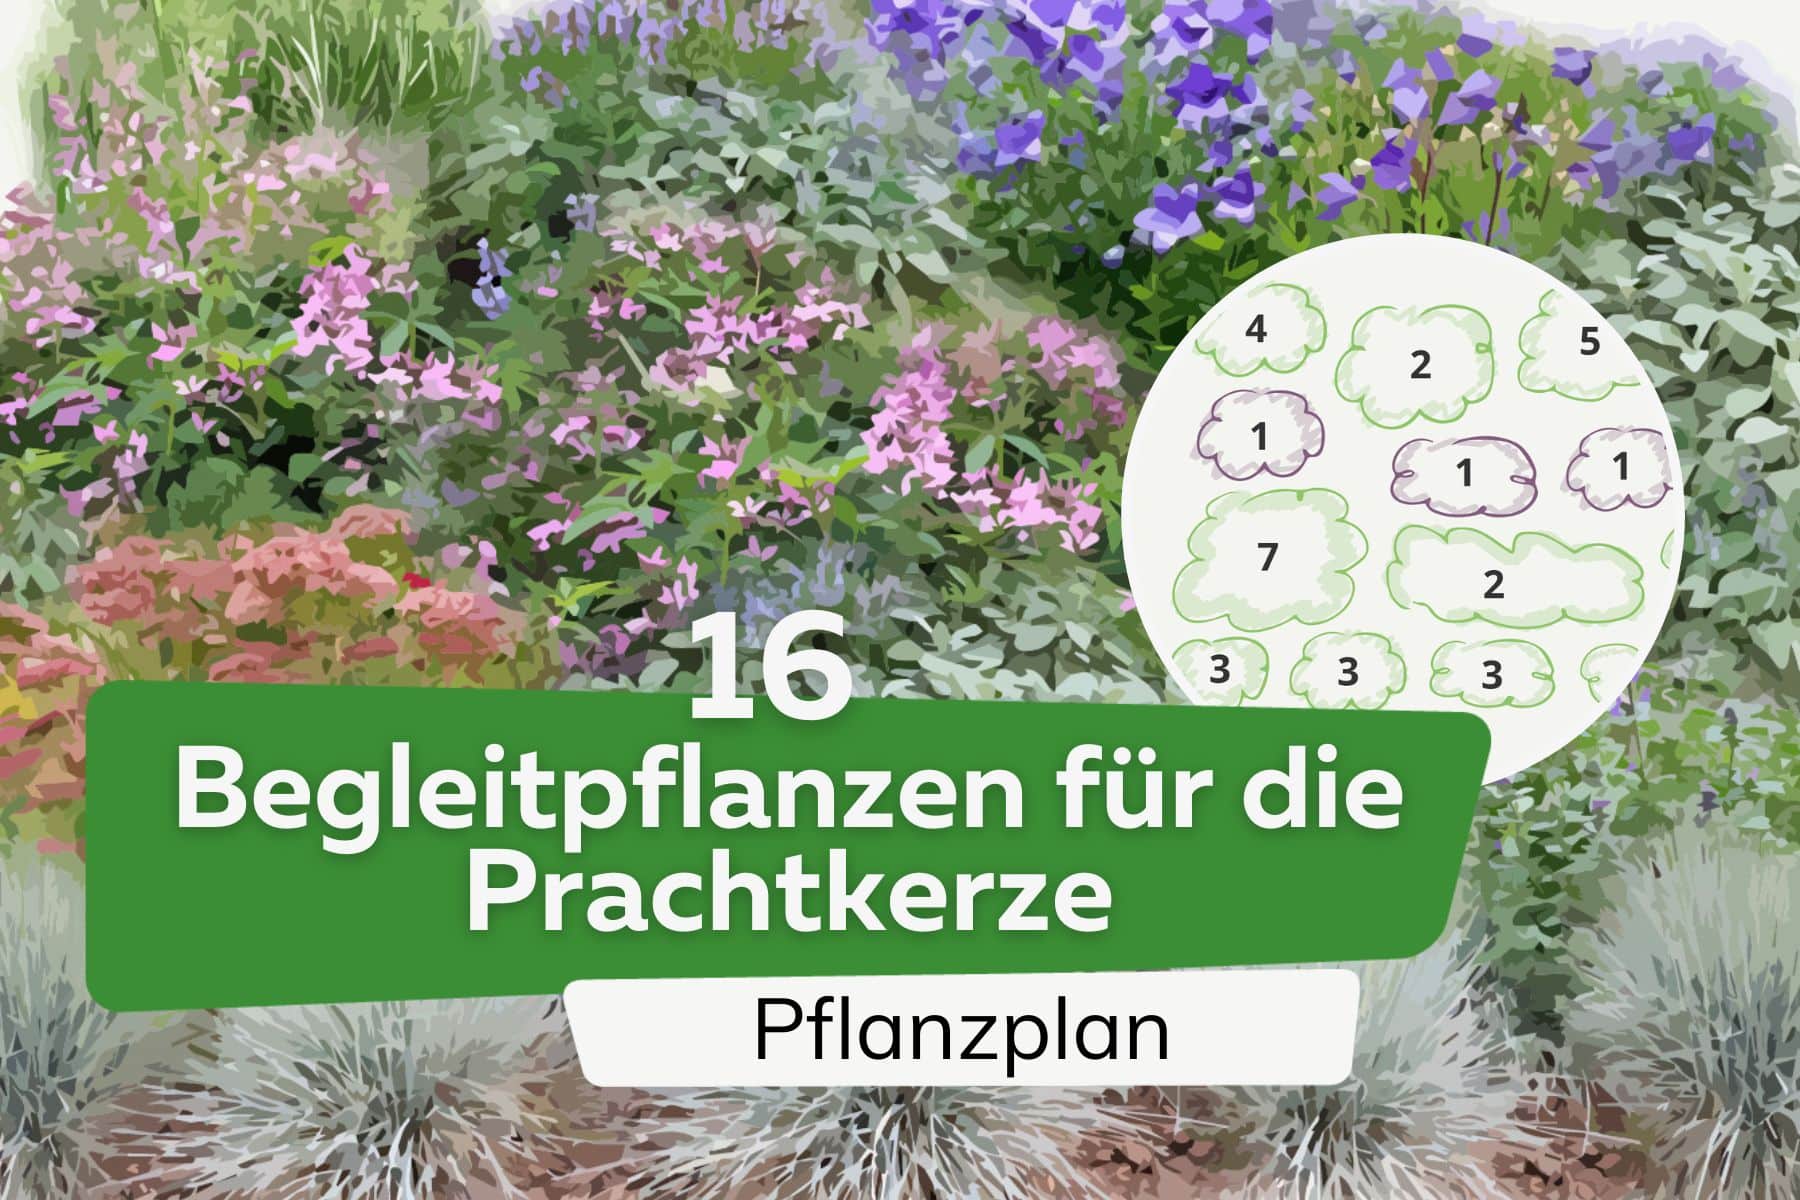 Prachtkerze kombinieren: 16 schöne Begleitpflanzen | Pflanzplan